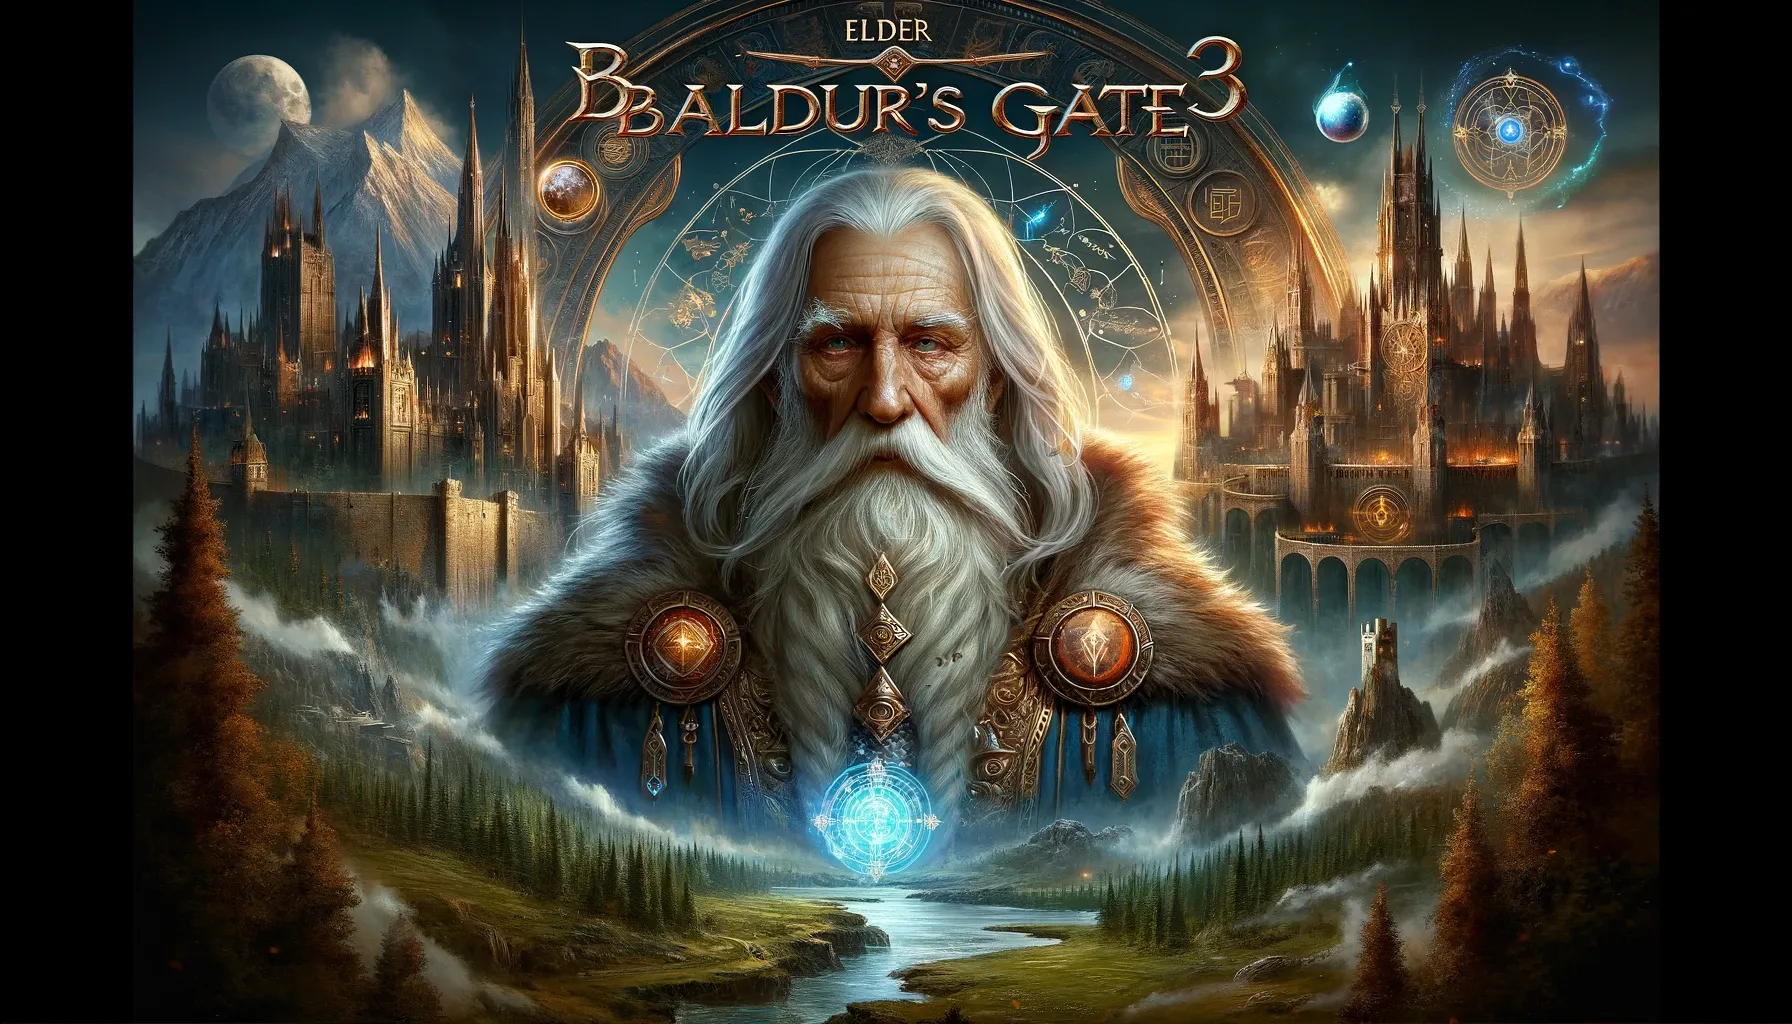 What is Elder Brithvar Baldurs Gate 3 Game?